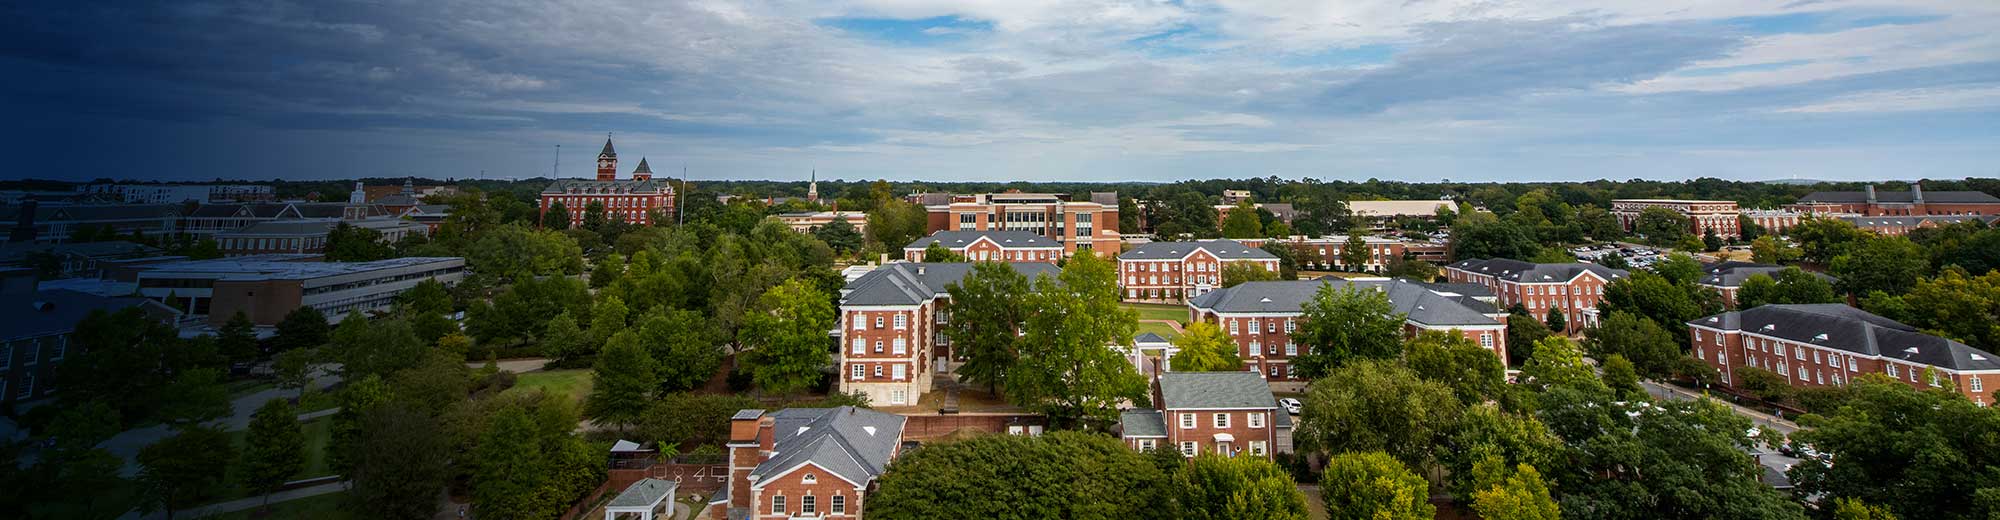 Auburn University Campus 